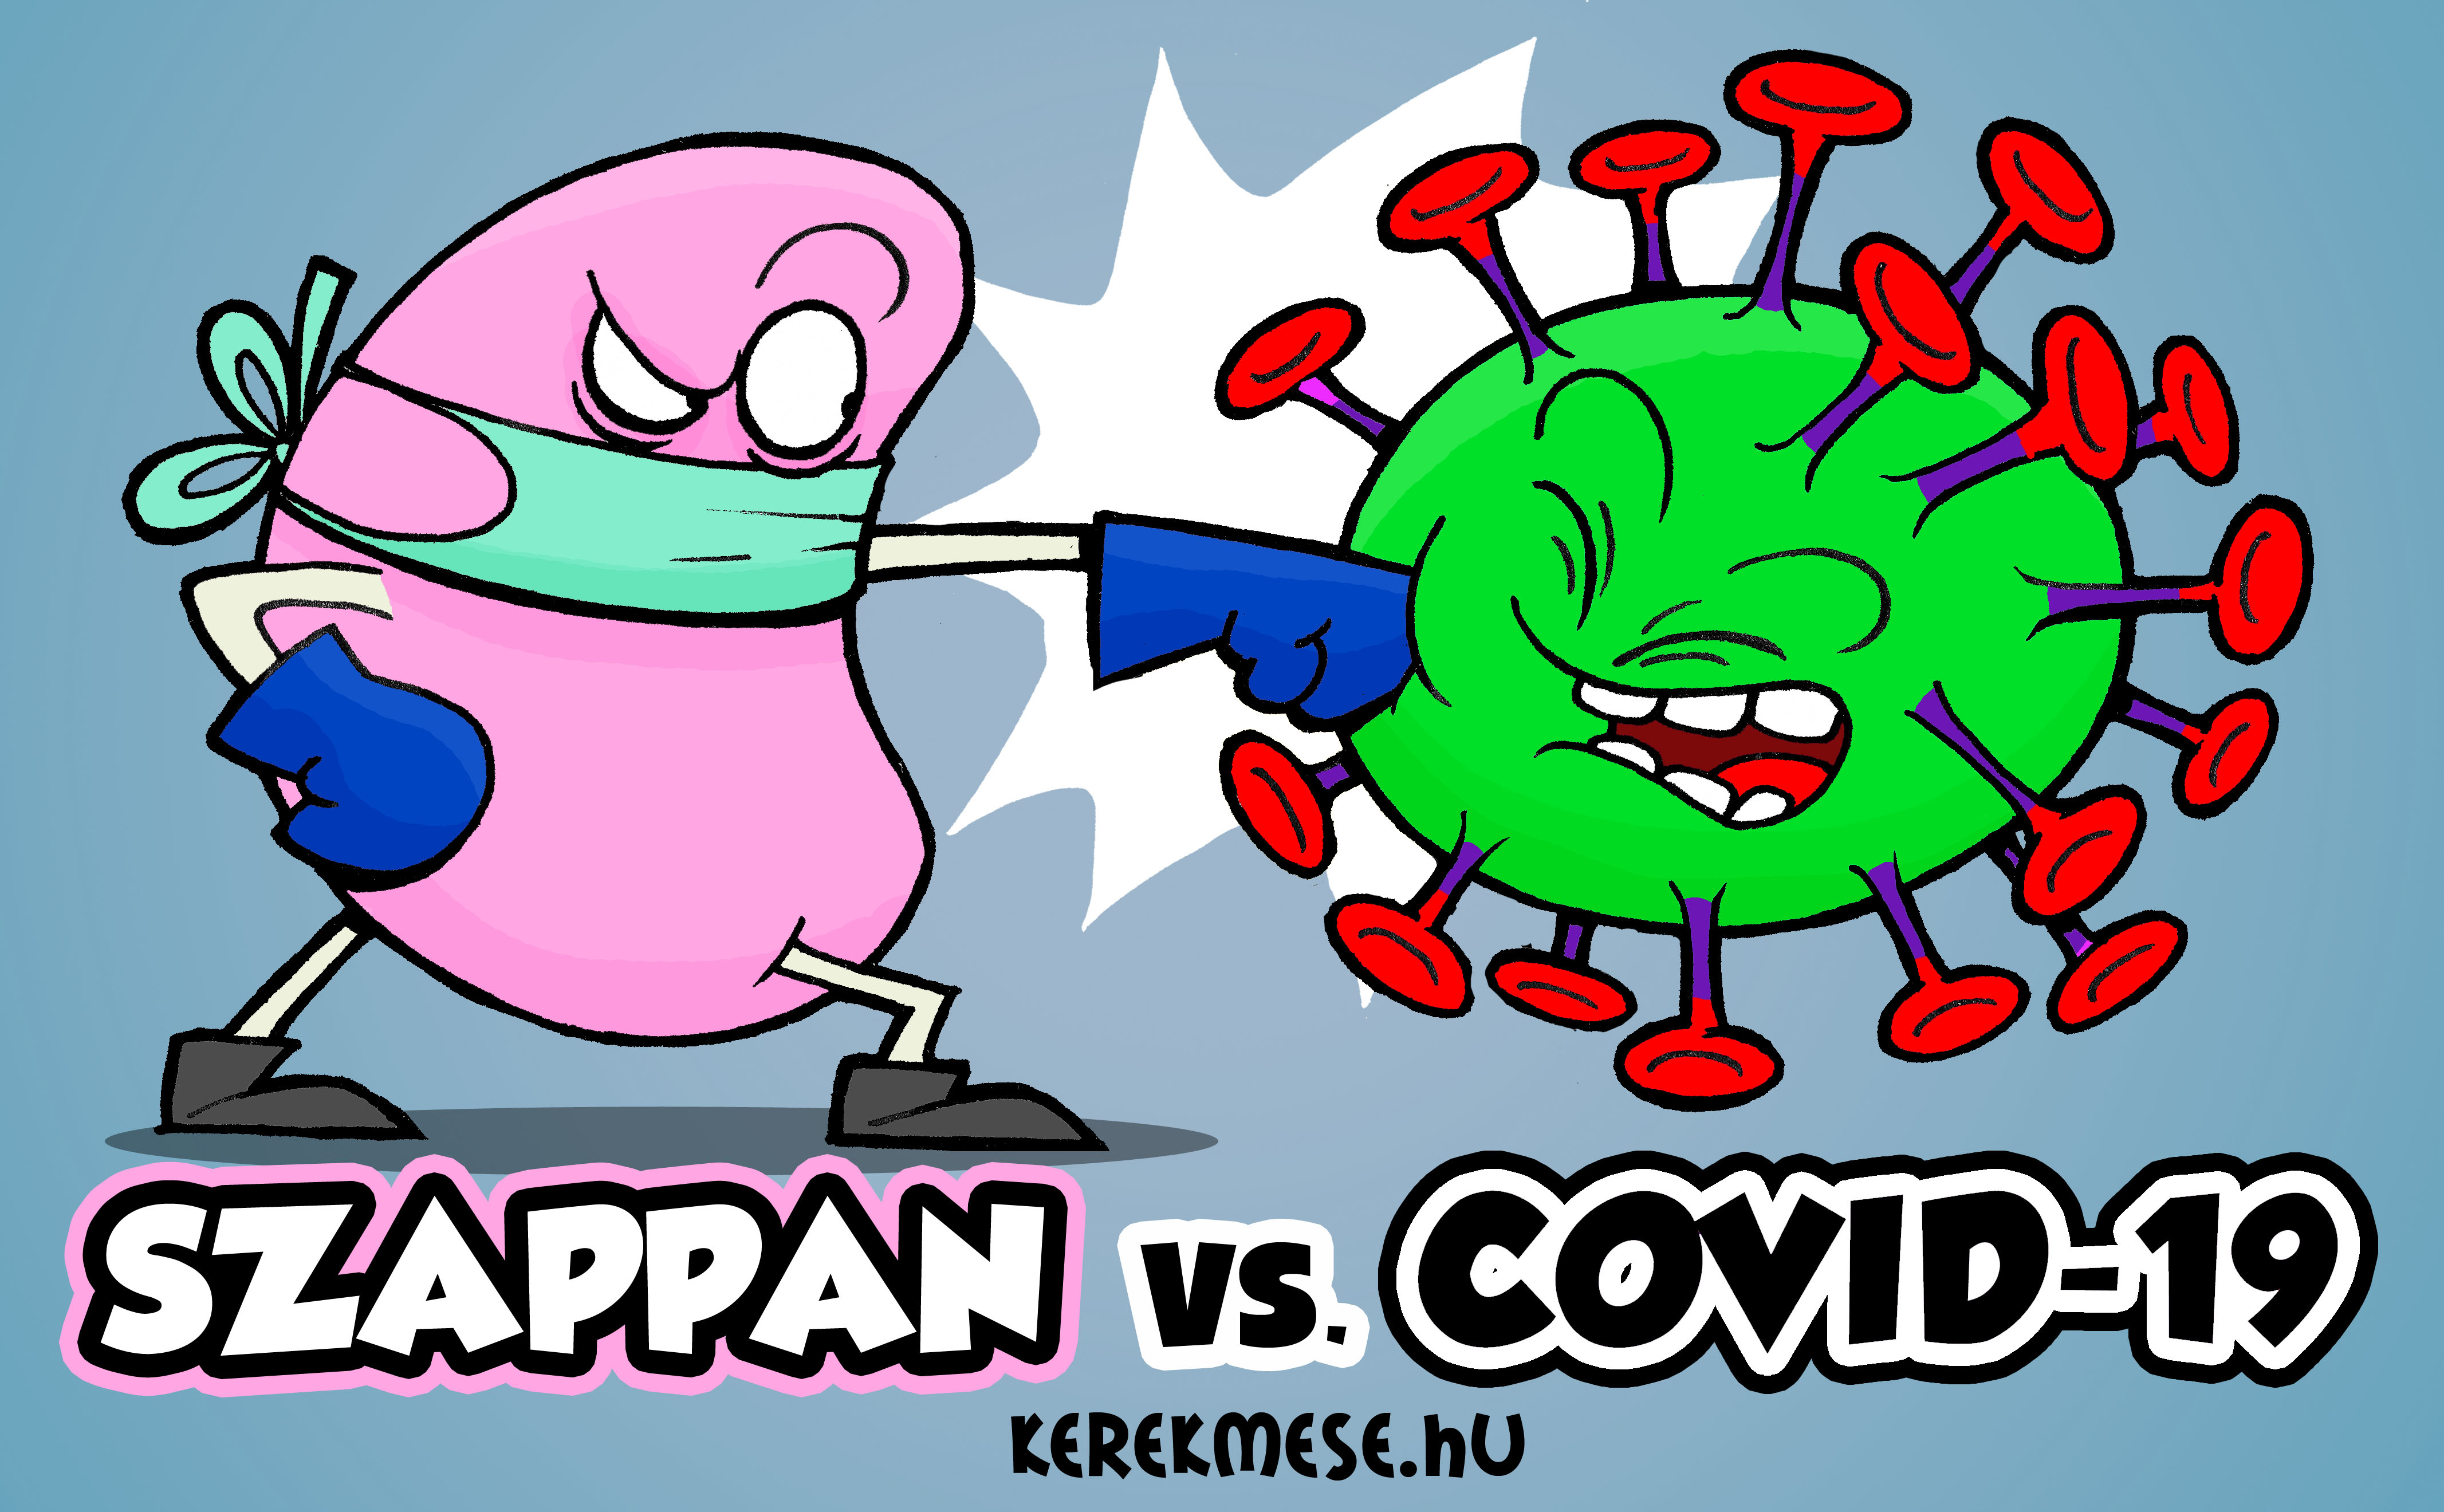 Korona-Virus-vs-Szappan-Hatterkep-letoltes-illusztracio.jpg